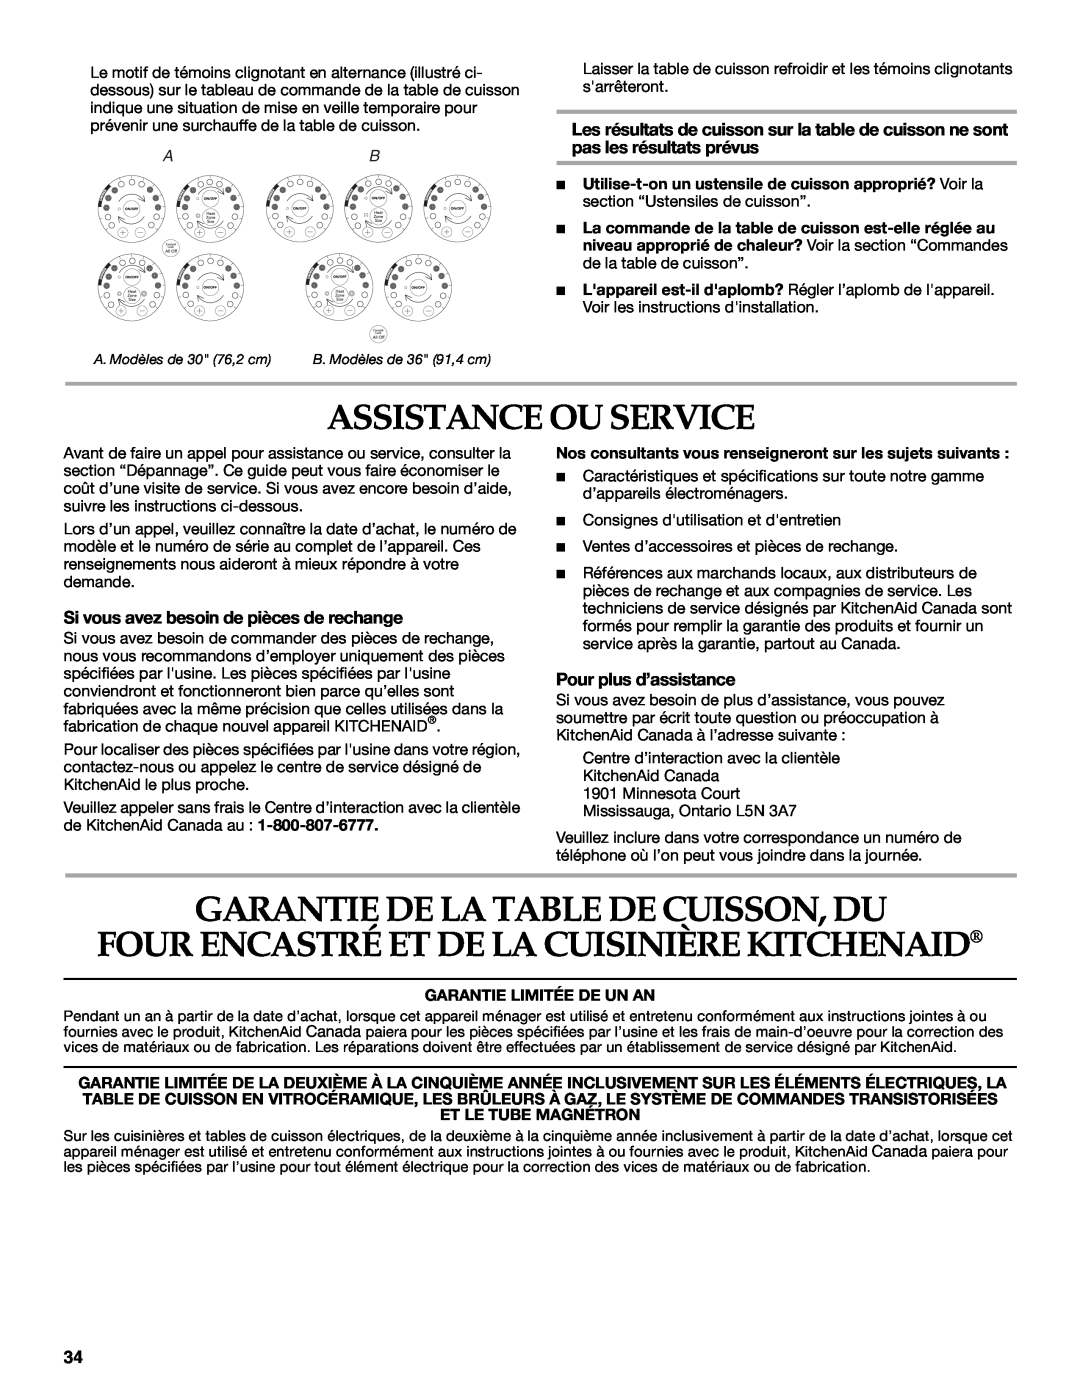 KitchenAid KECC056 Assistance Ou Service, Garantie De La Table De Cuisson, Du, Si vous avez besoin de pièces de rechange 